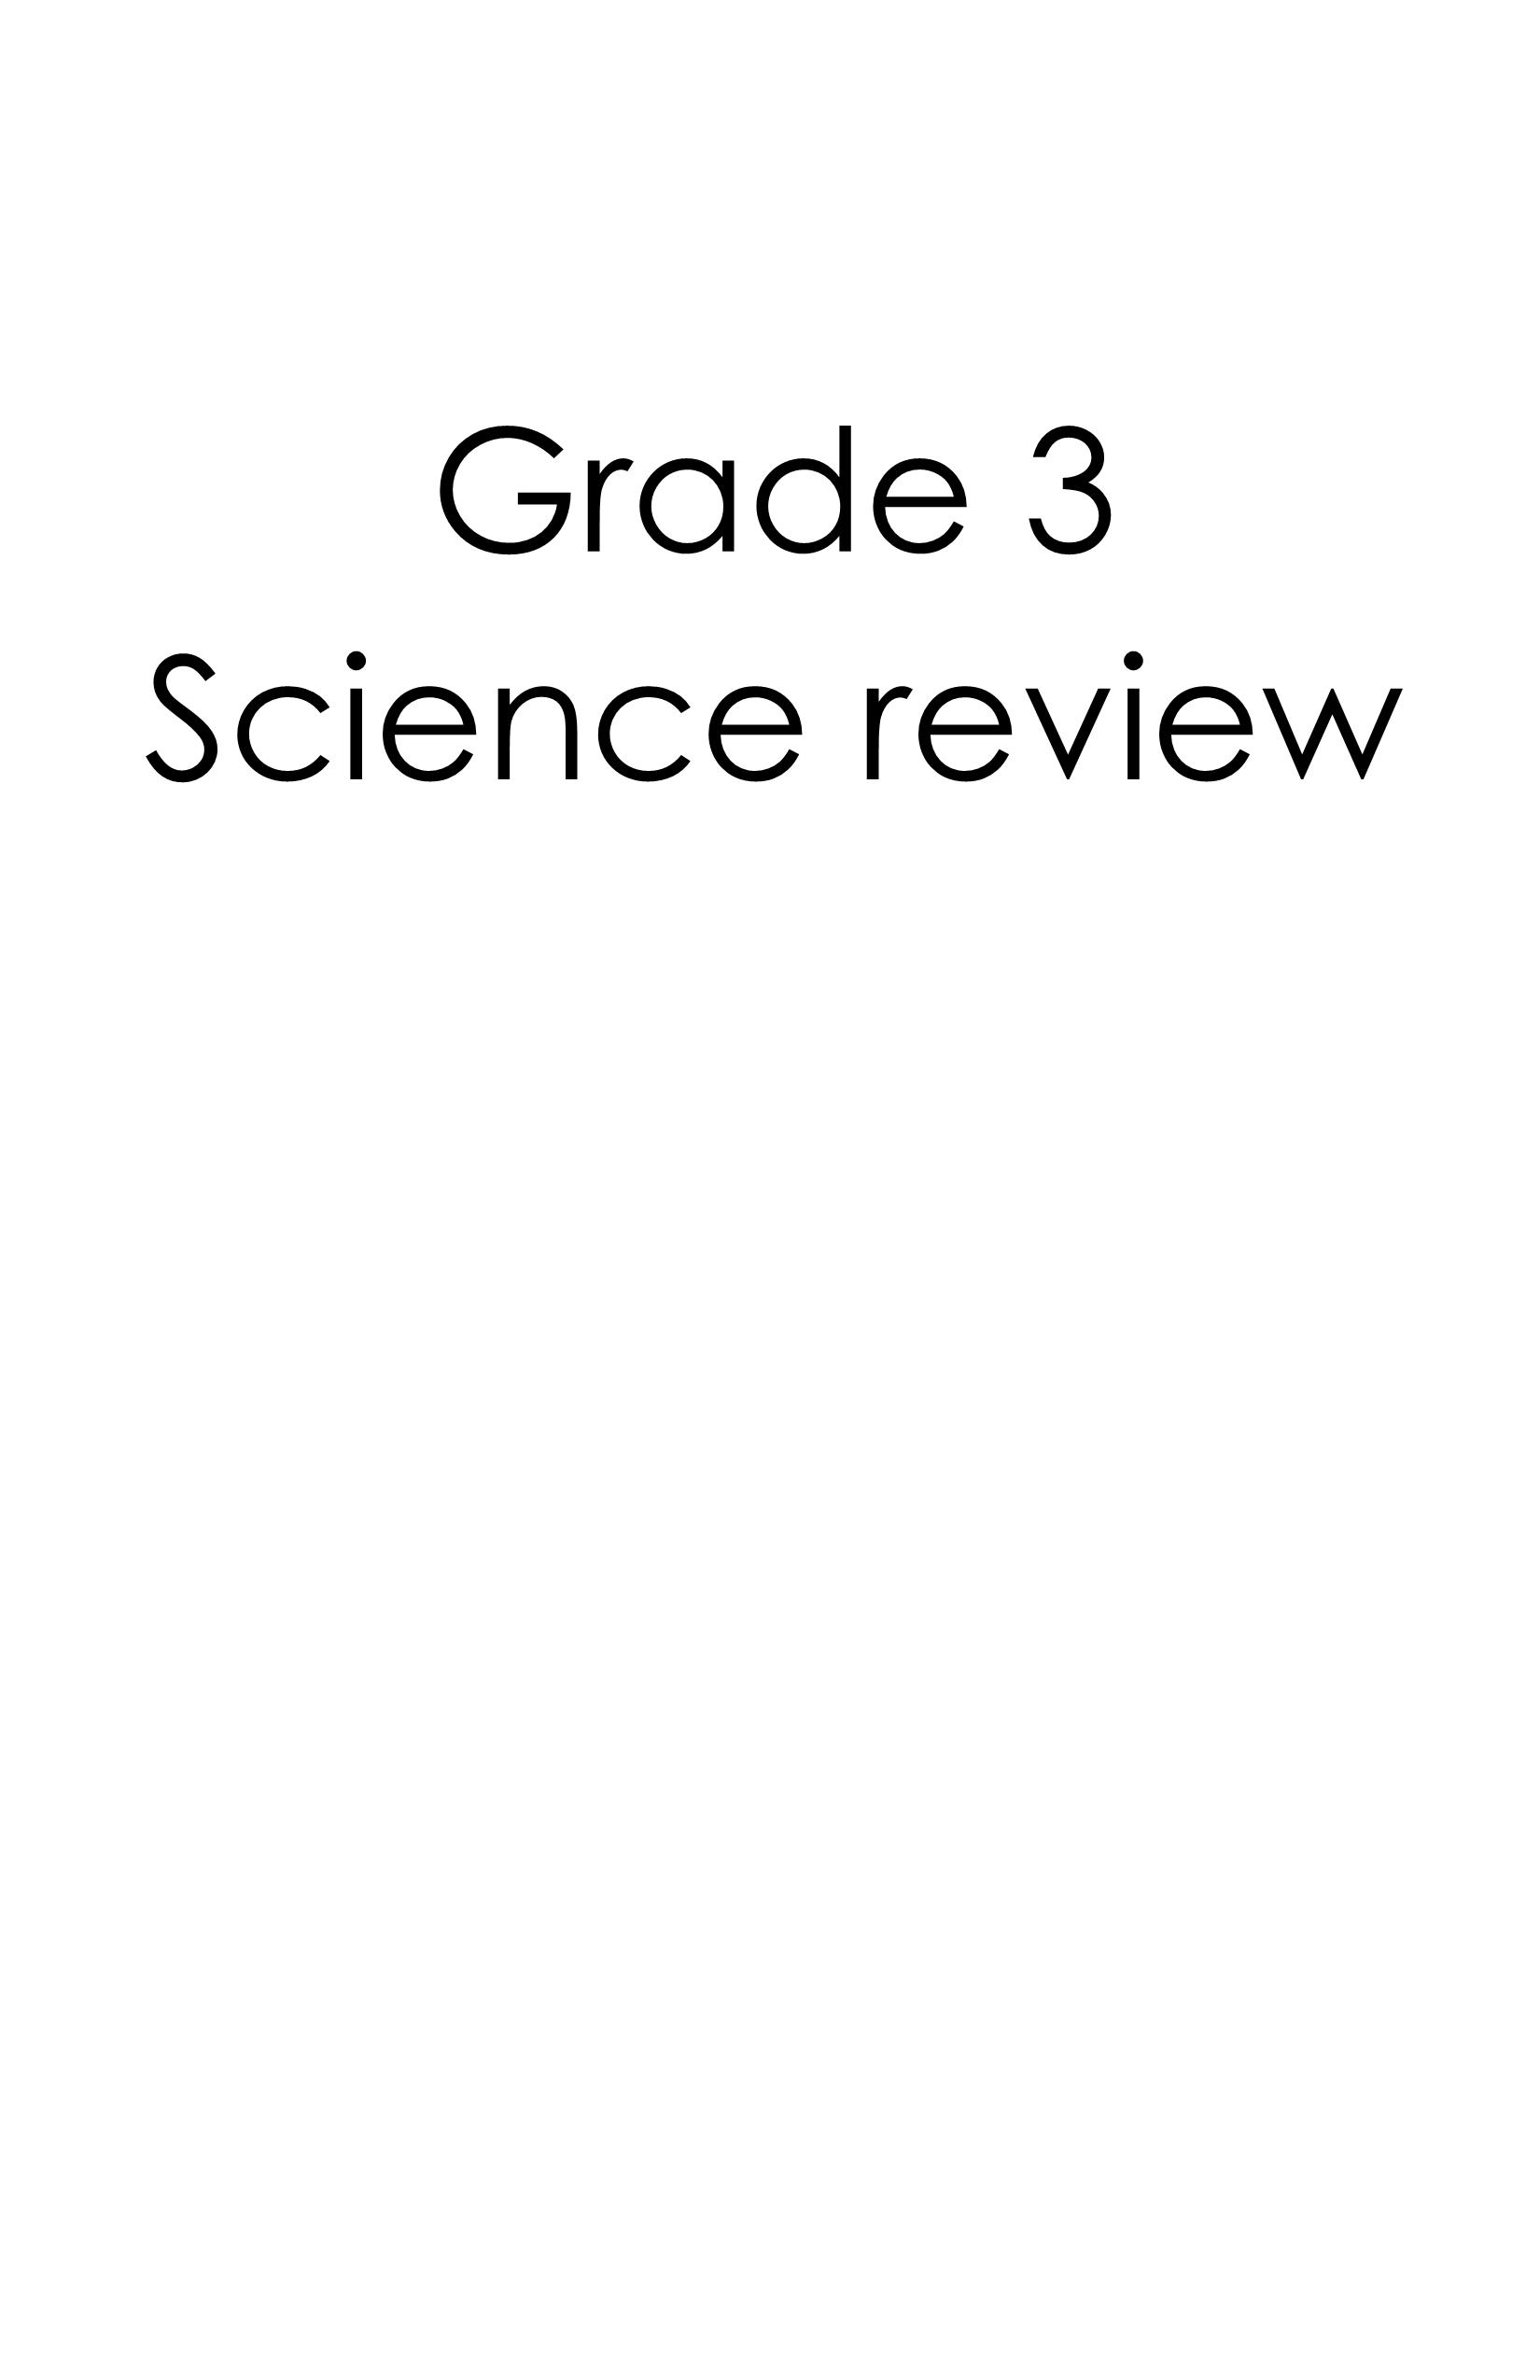 اوراق عمل مراجعة بالانجليزي مع الاجابات للصف الثالث مادة العلوم المتكاملة